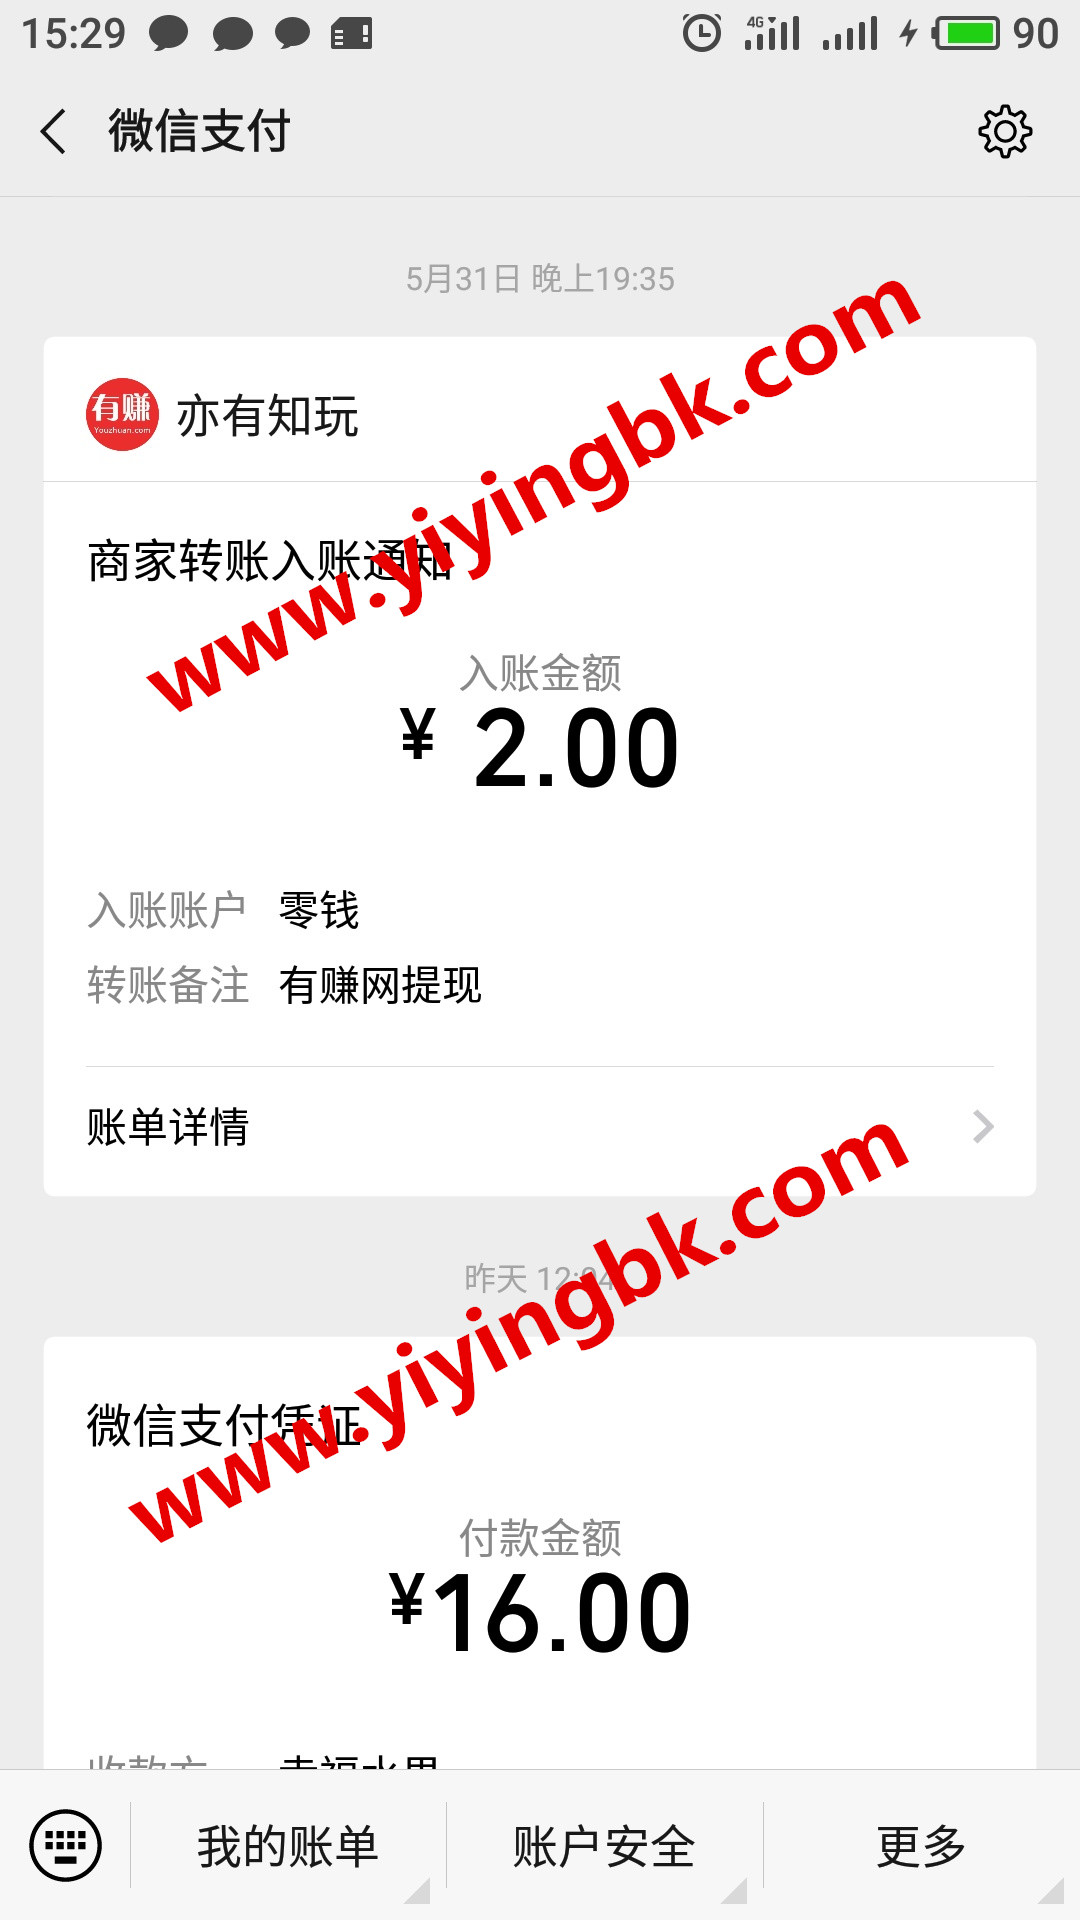 玩手游领红包赚零花钱，微信提现2元极速到账。www.yiyingbk.com